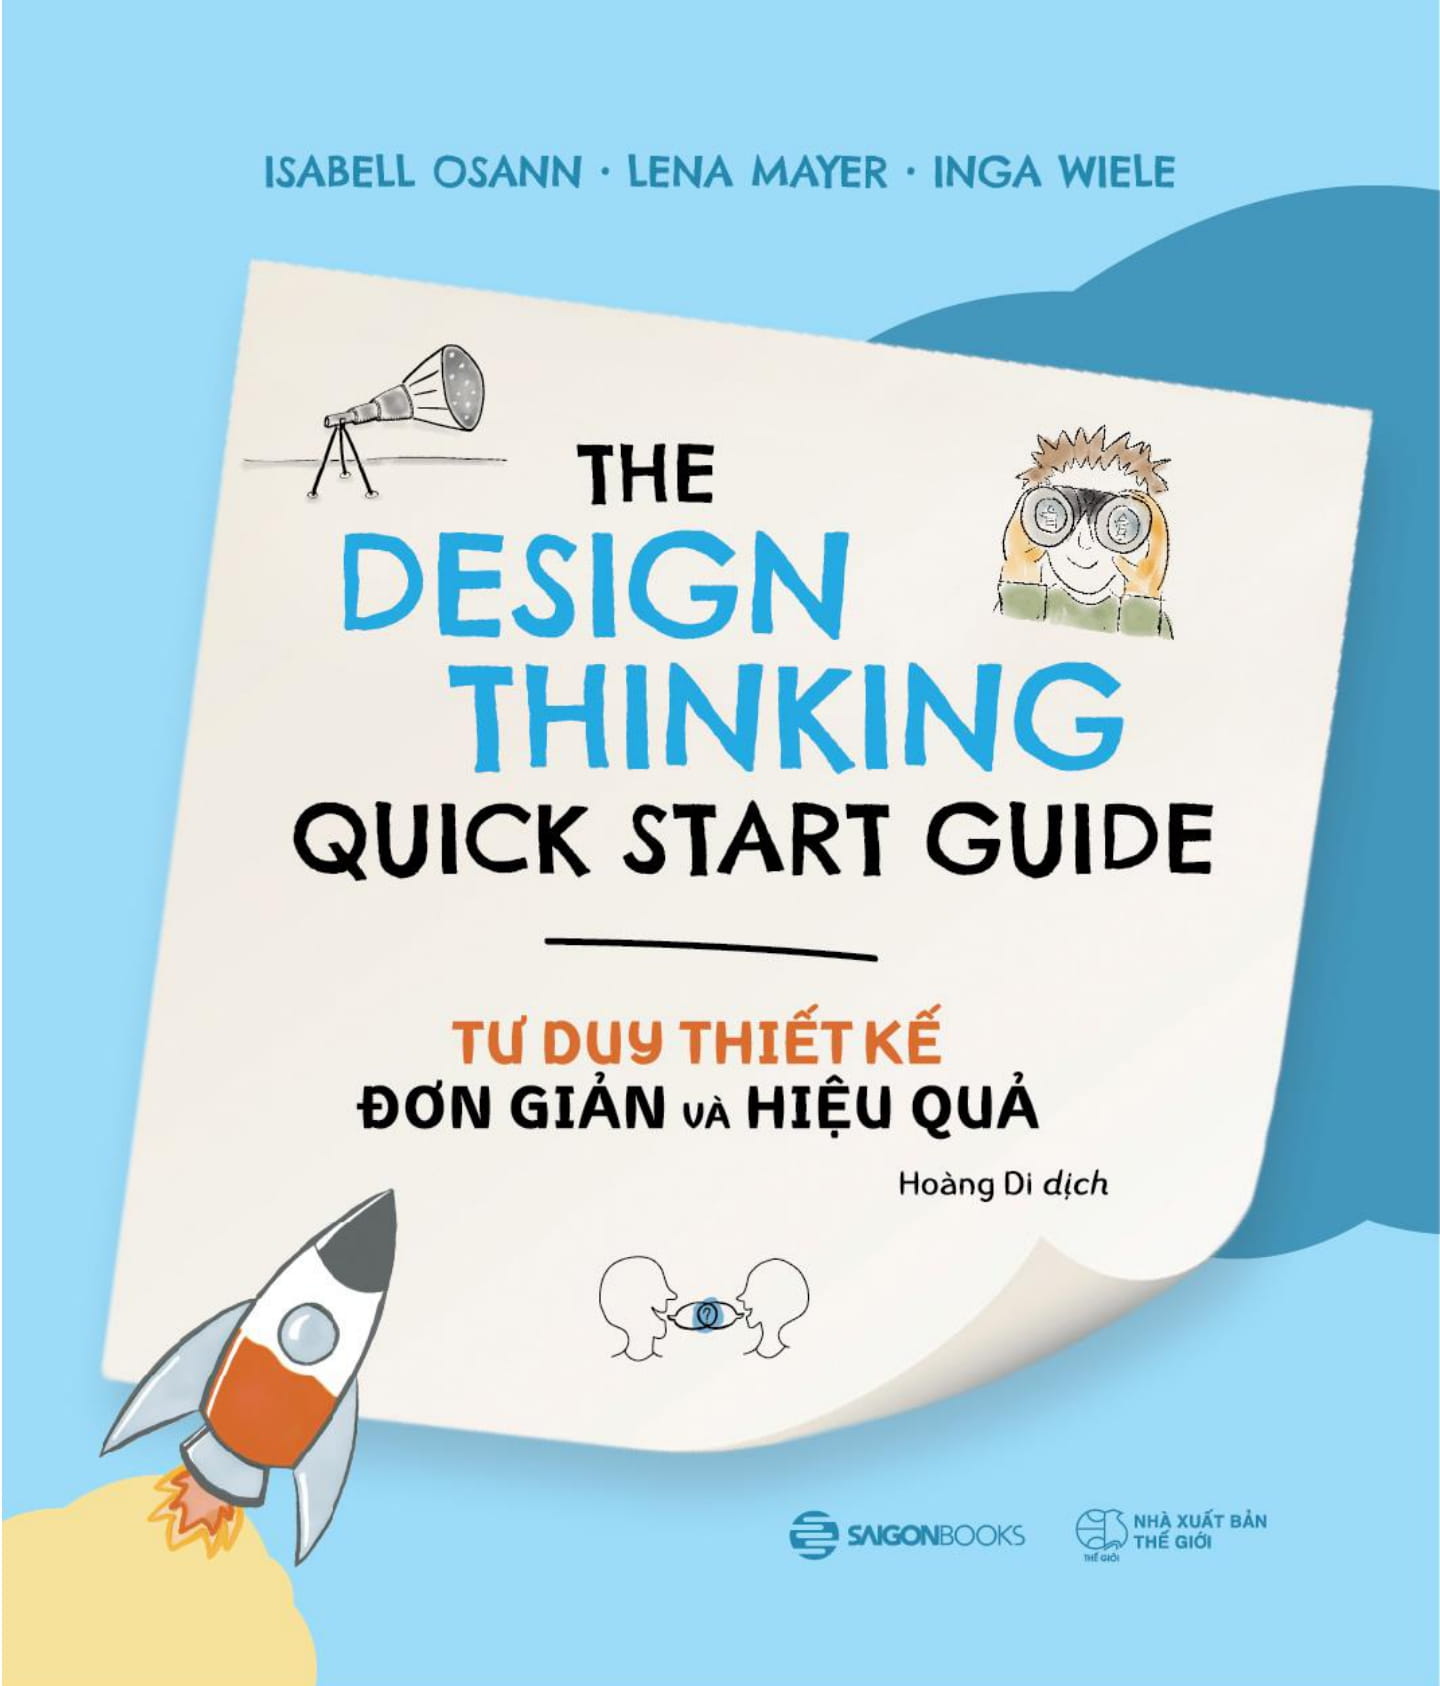 Tư Duy Thiết Kế Đơn Giản Và Hiệu Quả - The Design Thinking Quick Start Guide PDF